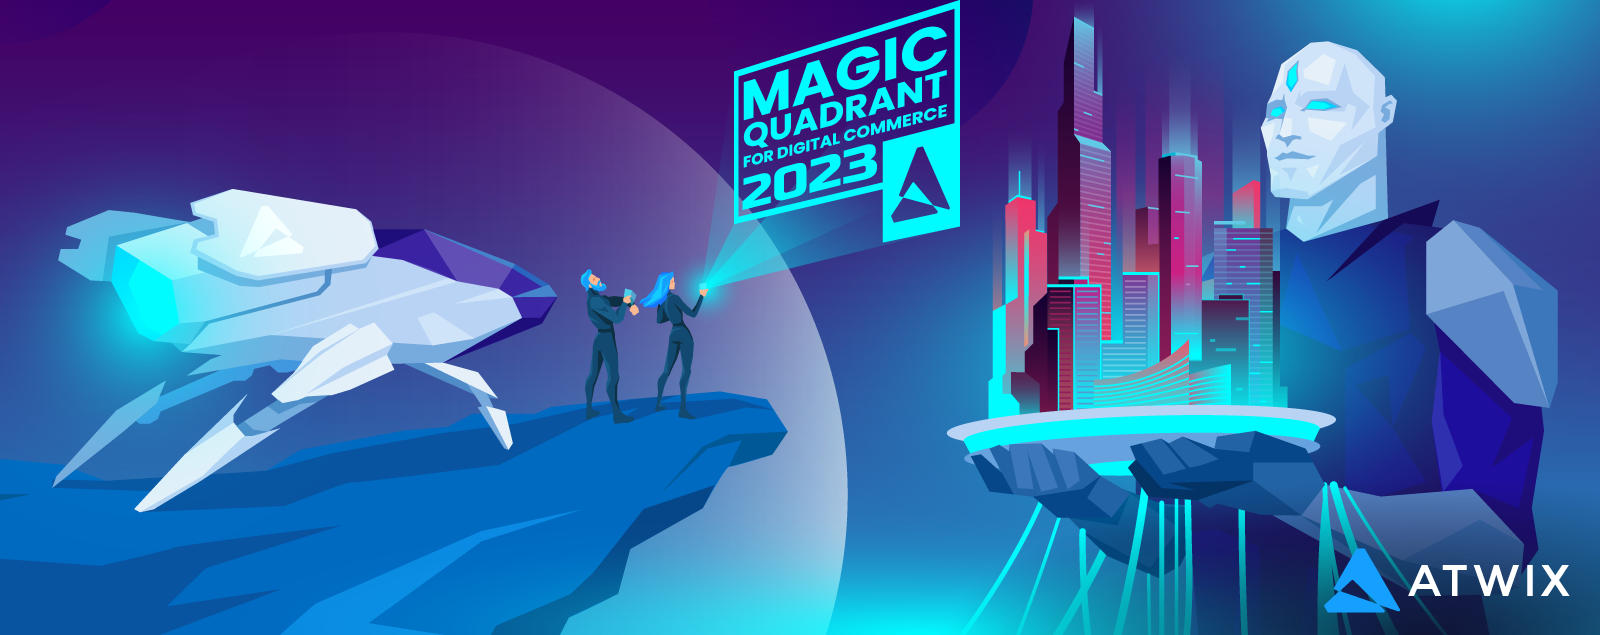 Gartner Magic Quadrant For Digital Commerce 2023 vs 2022